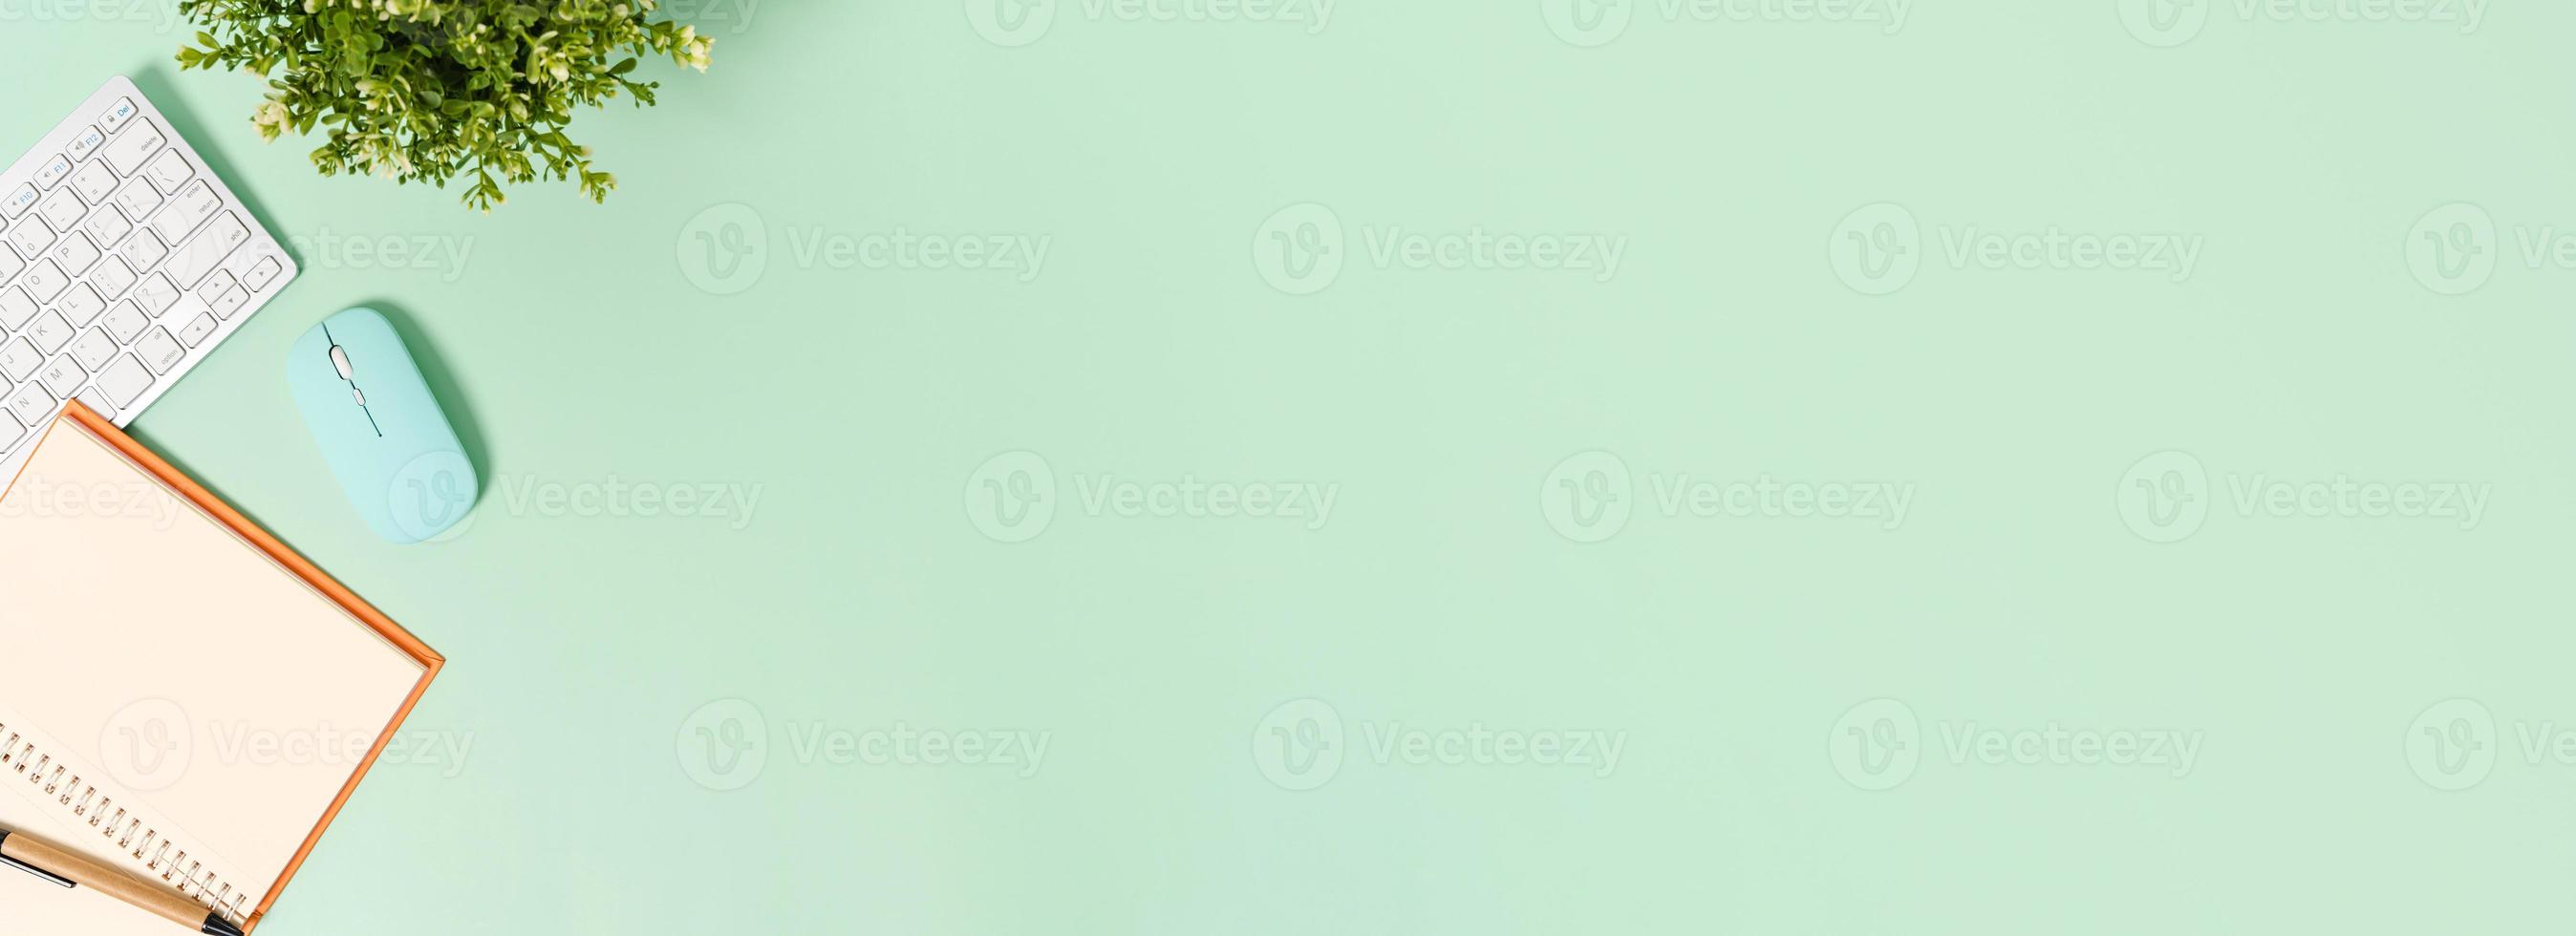 foto piatta creativa della scrivania dell'area di lavoro. scrivania da ufficio vista dall'alto con tastiera, mouse e taccuino nero mockup aperto su sfondo di colore verde pastello. vista dall'alto mock up con la fotografia dello spazio di copia.